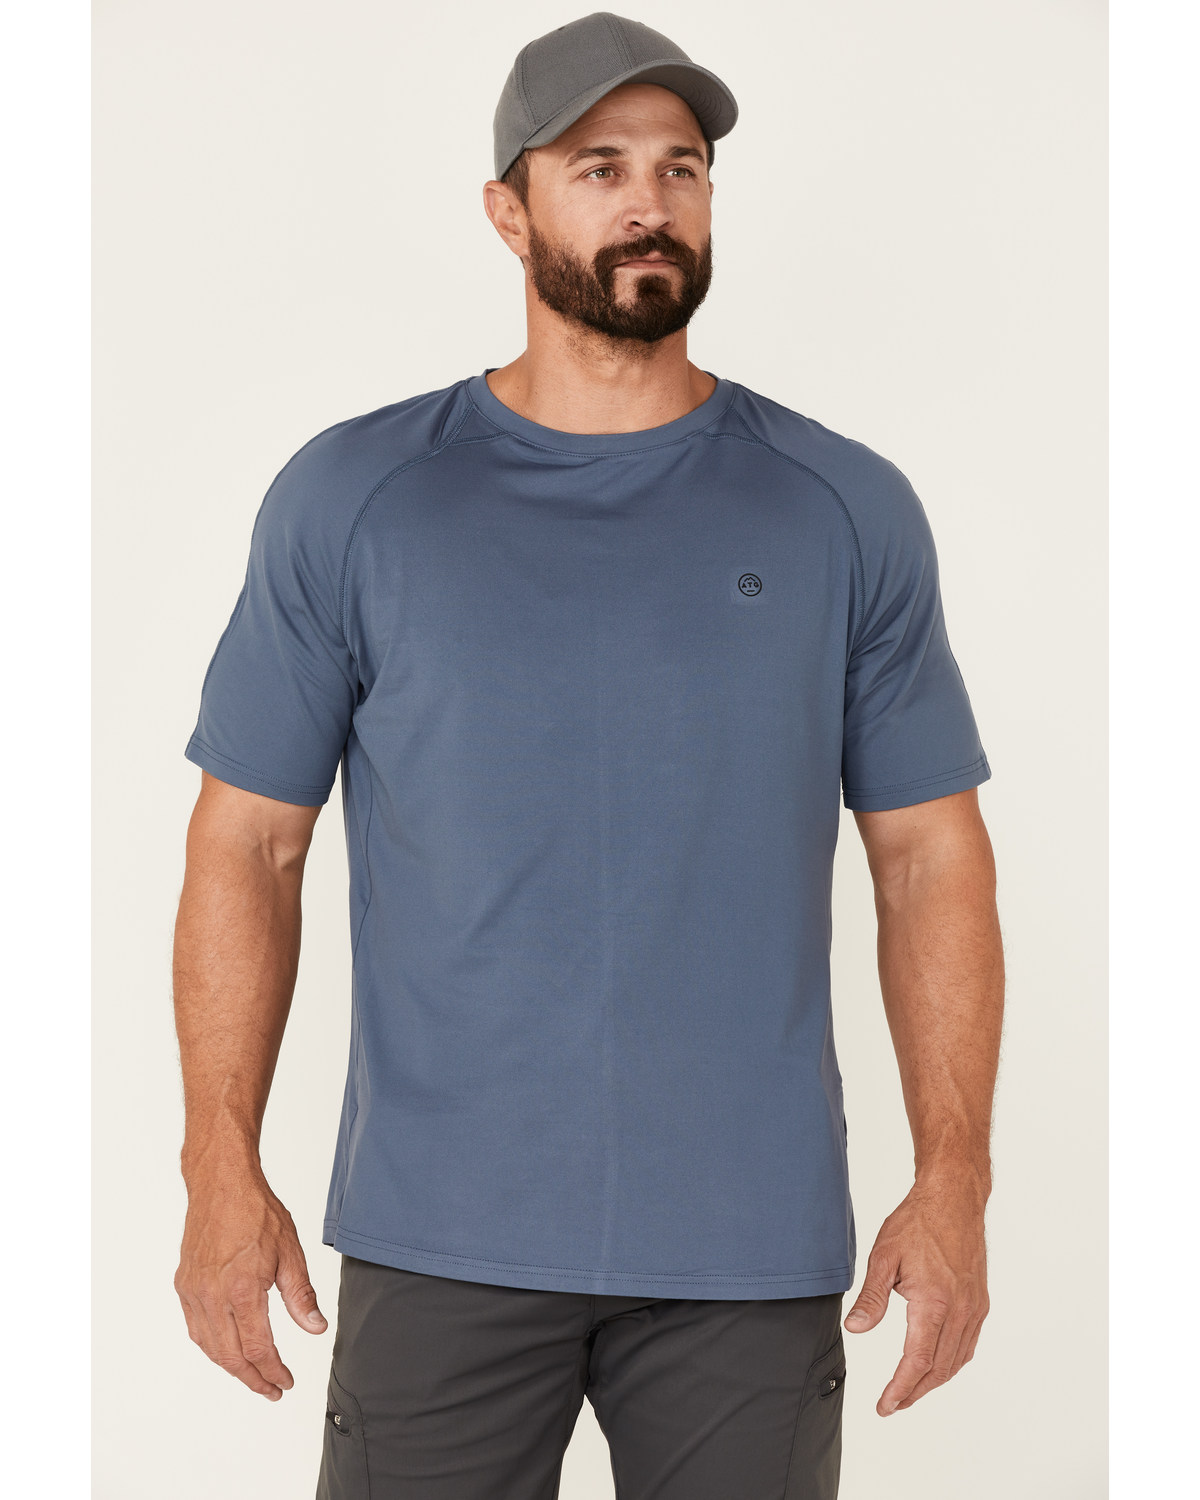 ATG by Wrangler Men's All-Terrain Vintage Indigo Performance Short Sleeve T-Shirt